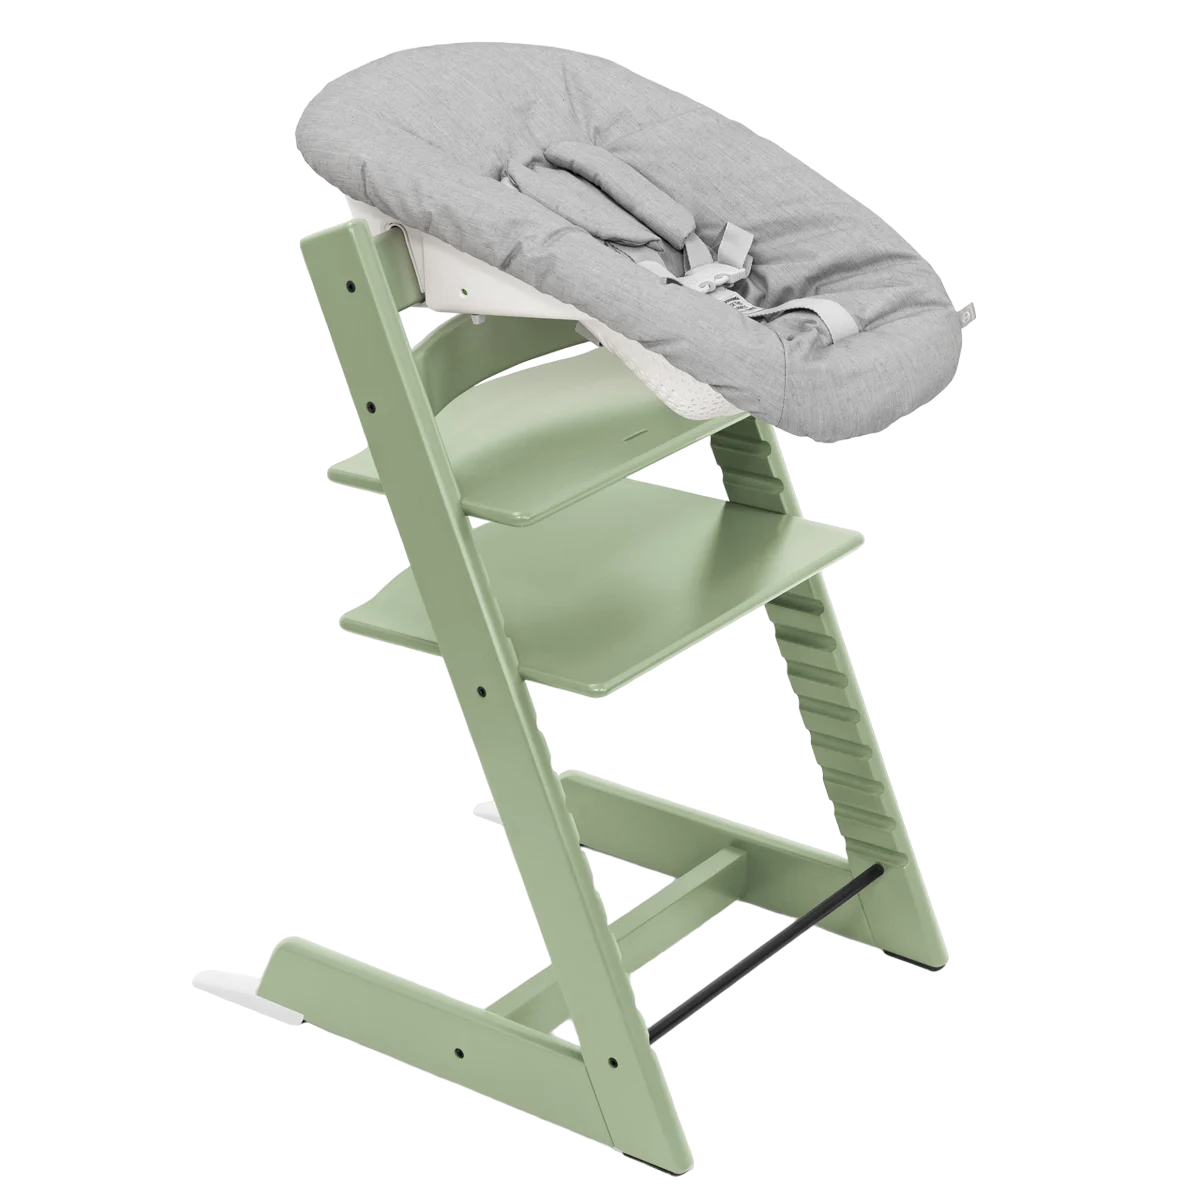 Набор Stokke Newborn Tripp Trapp Moss Green: стульчик и кресло для новорожденных (k.100130.52) - фото 1